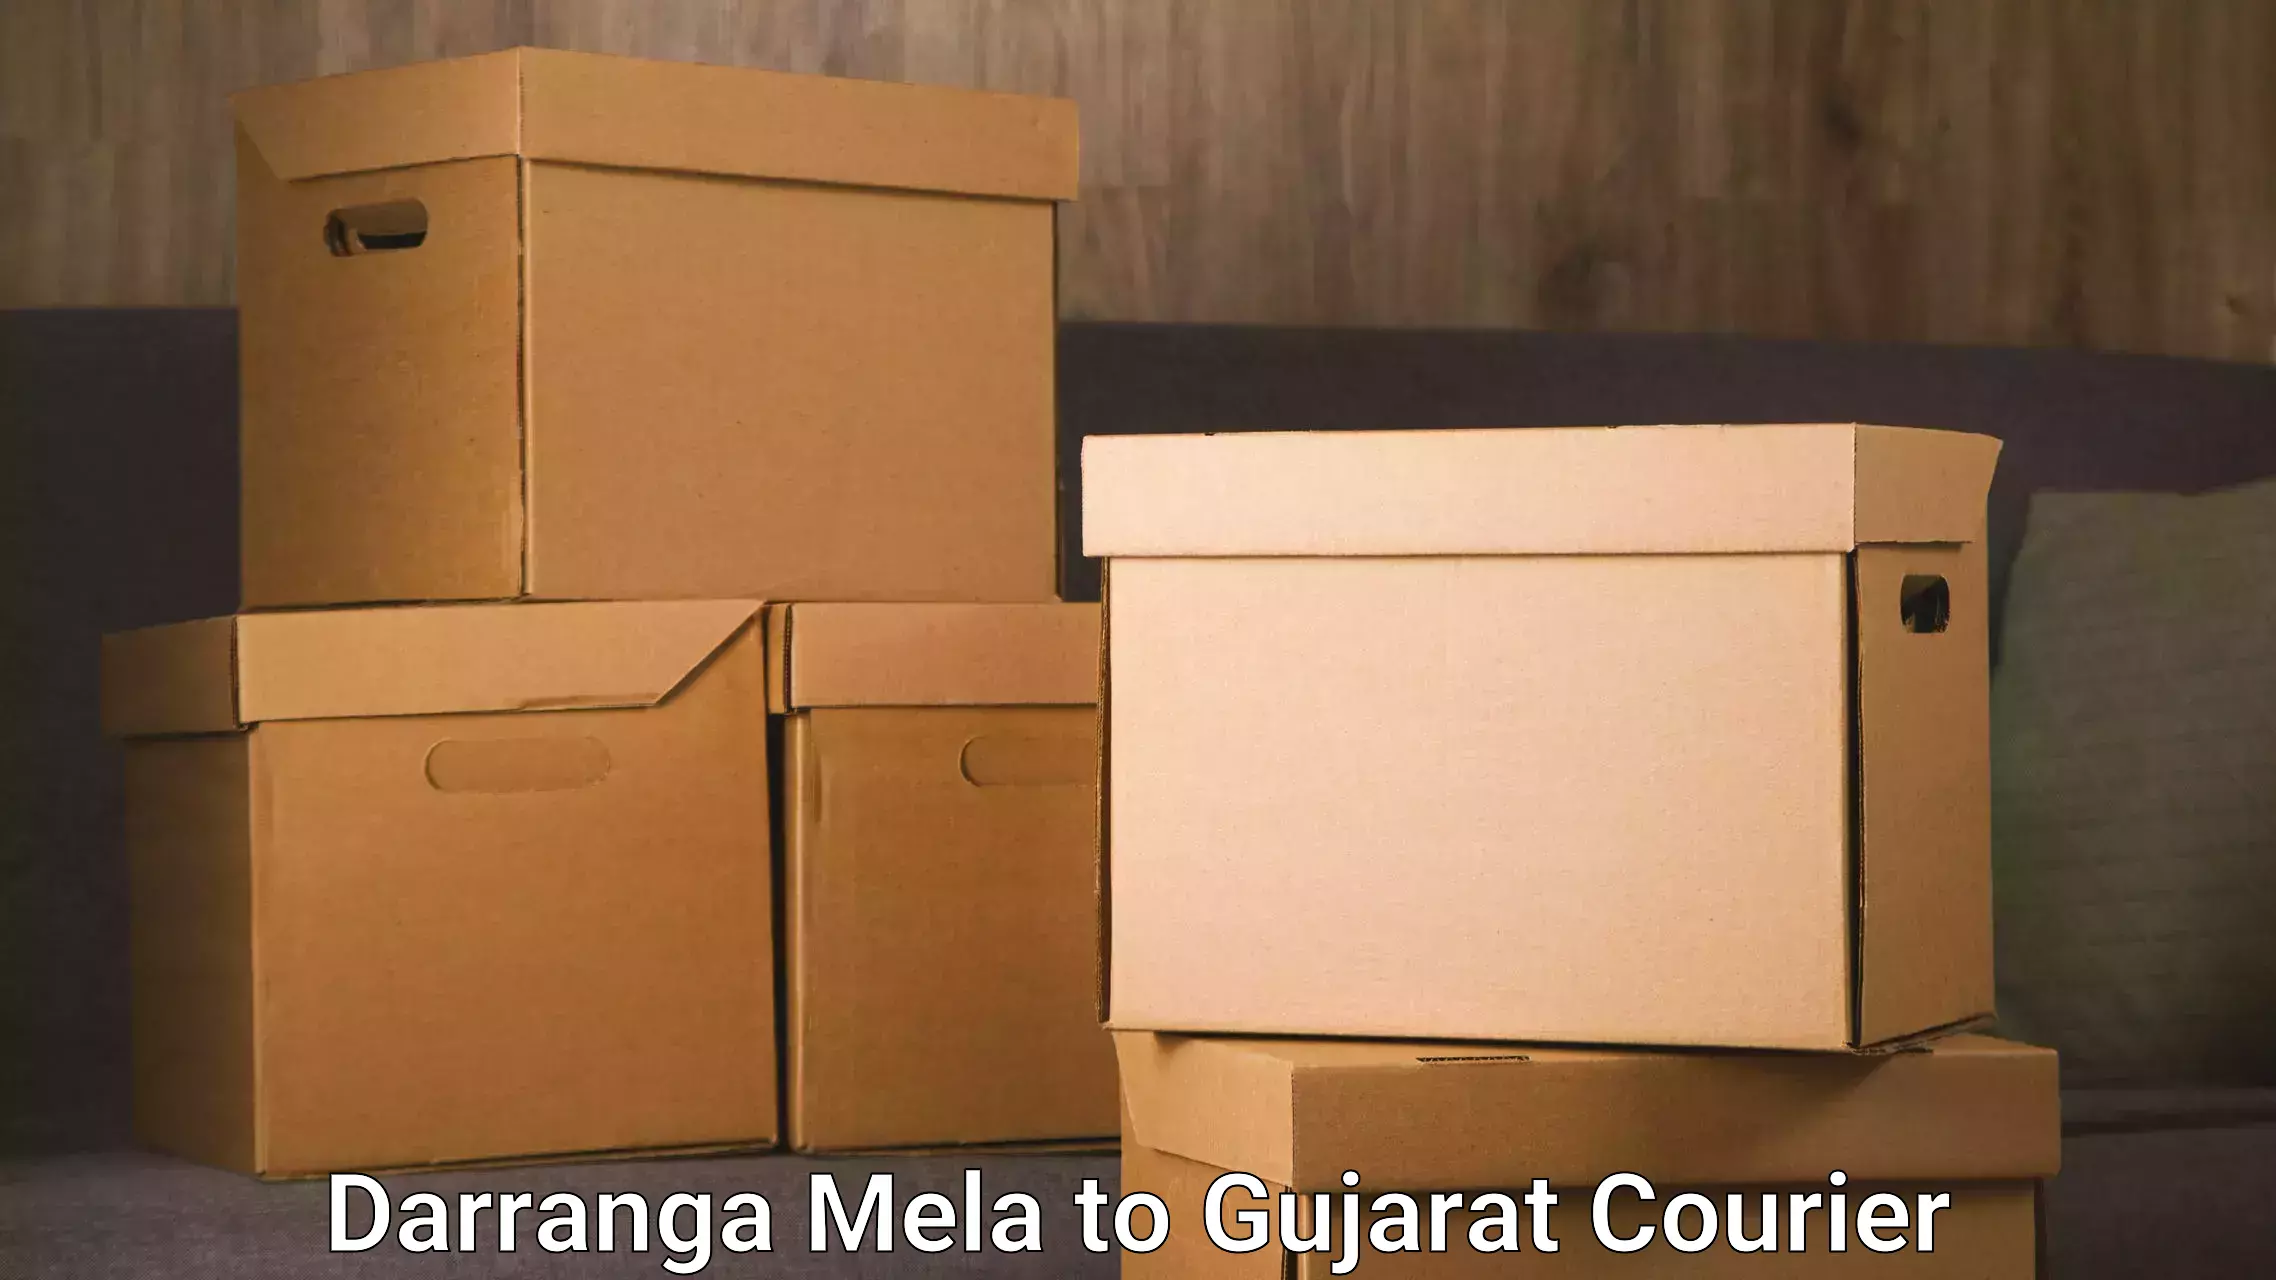 Courier service partnerships Darranga Mela to Kodinar